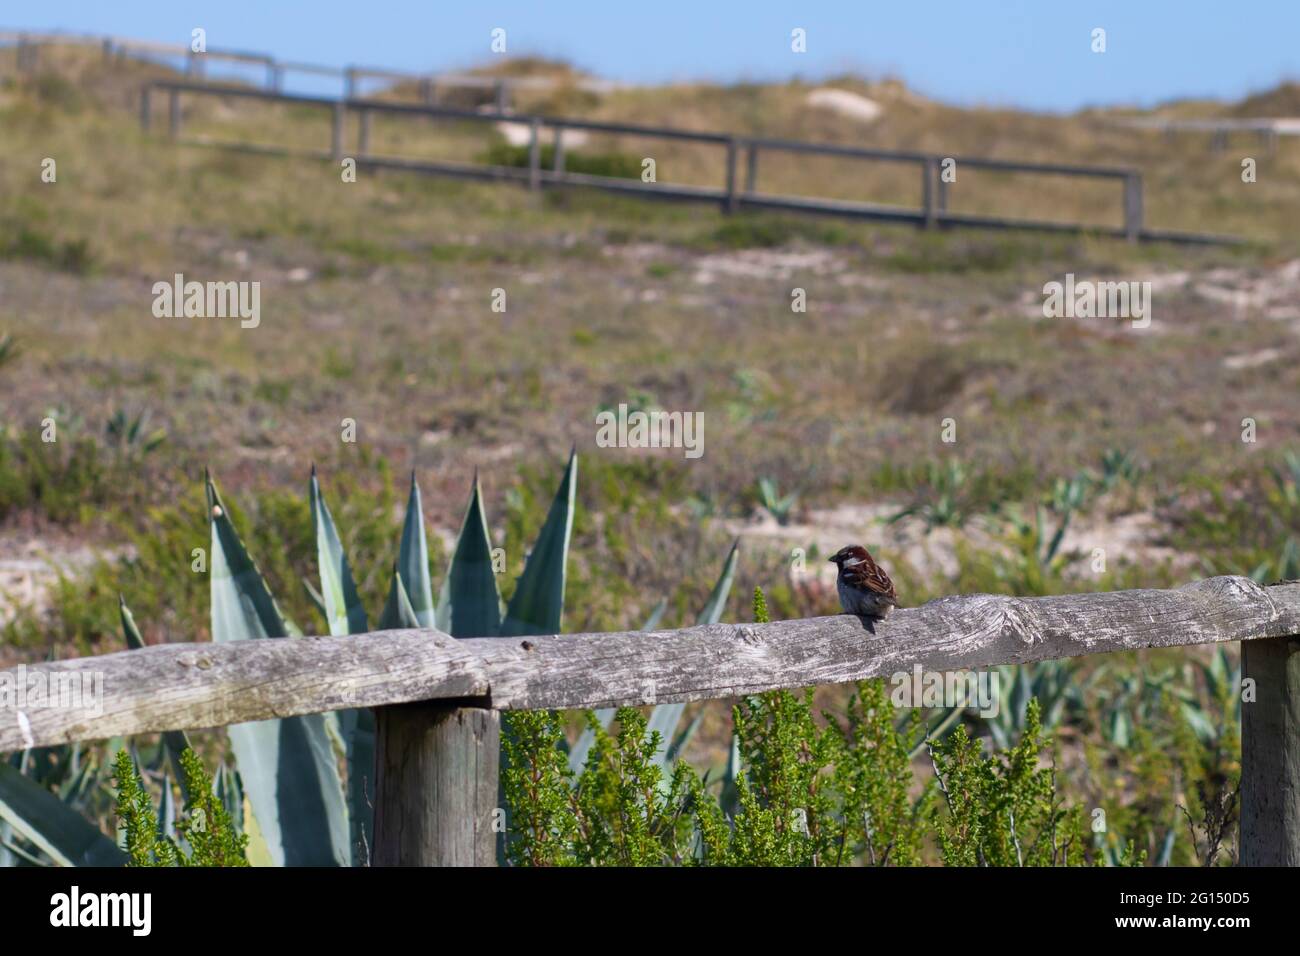 Un piccolo passero che si erge sul corrimano di passerella in legno in un'area costiera circondata da dune di sabbia coperte di vegetazione e piante del secolo Foto Stock